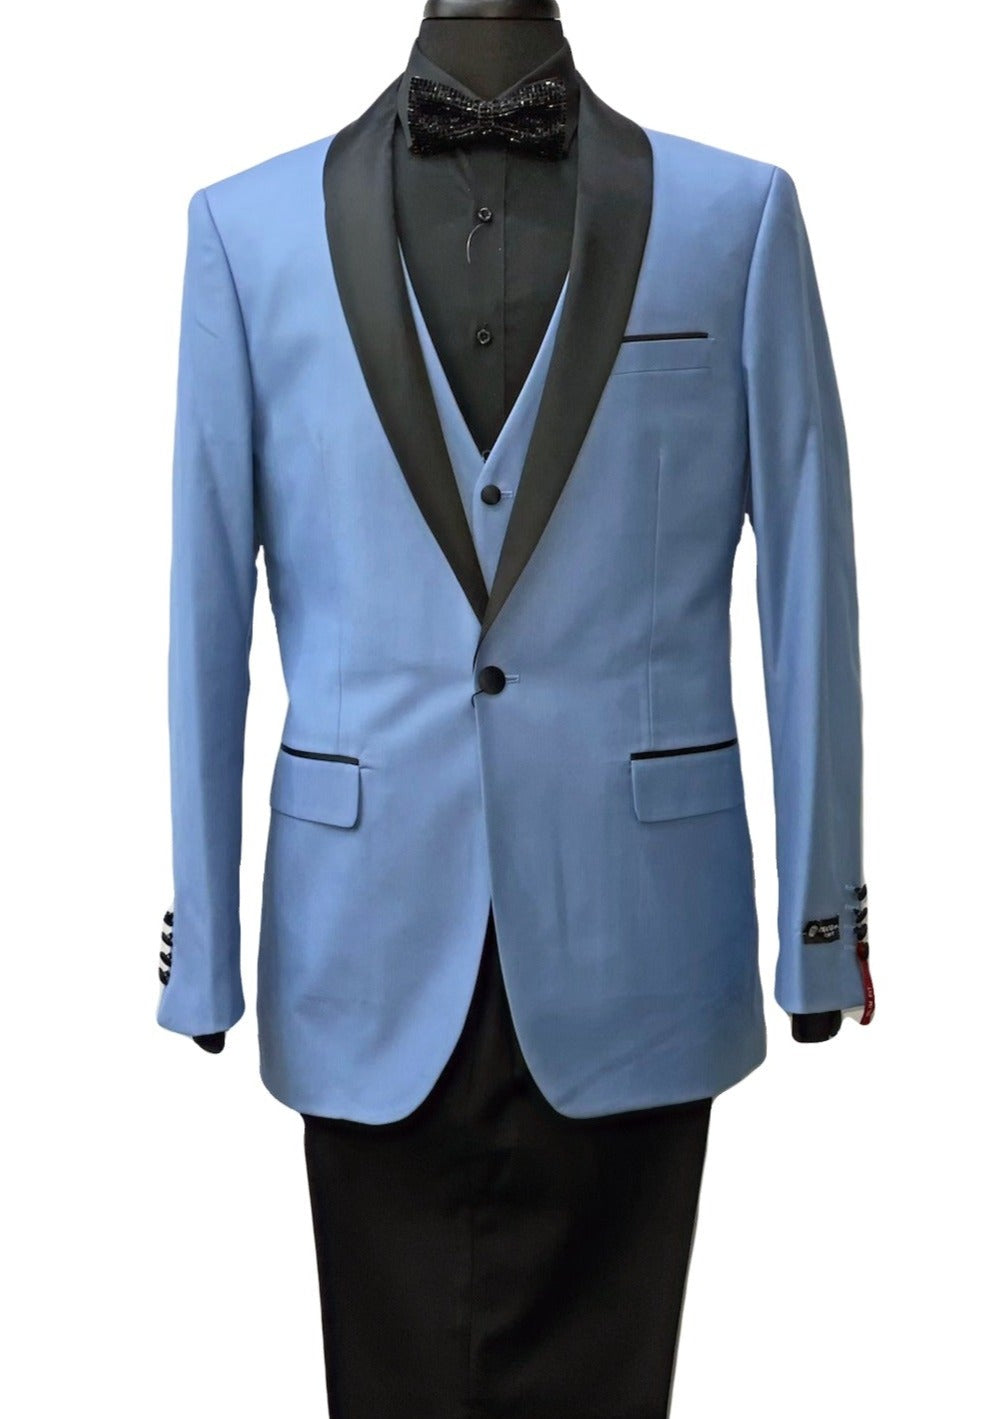 Imani Uomo Blue & Black Contrasting Suit